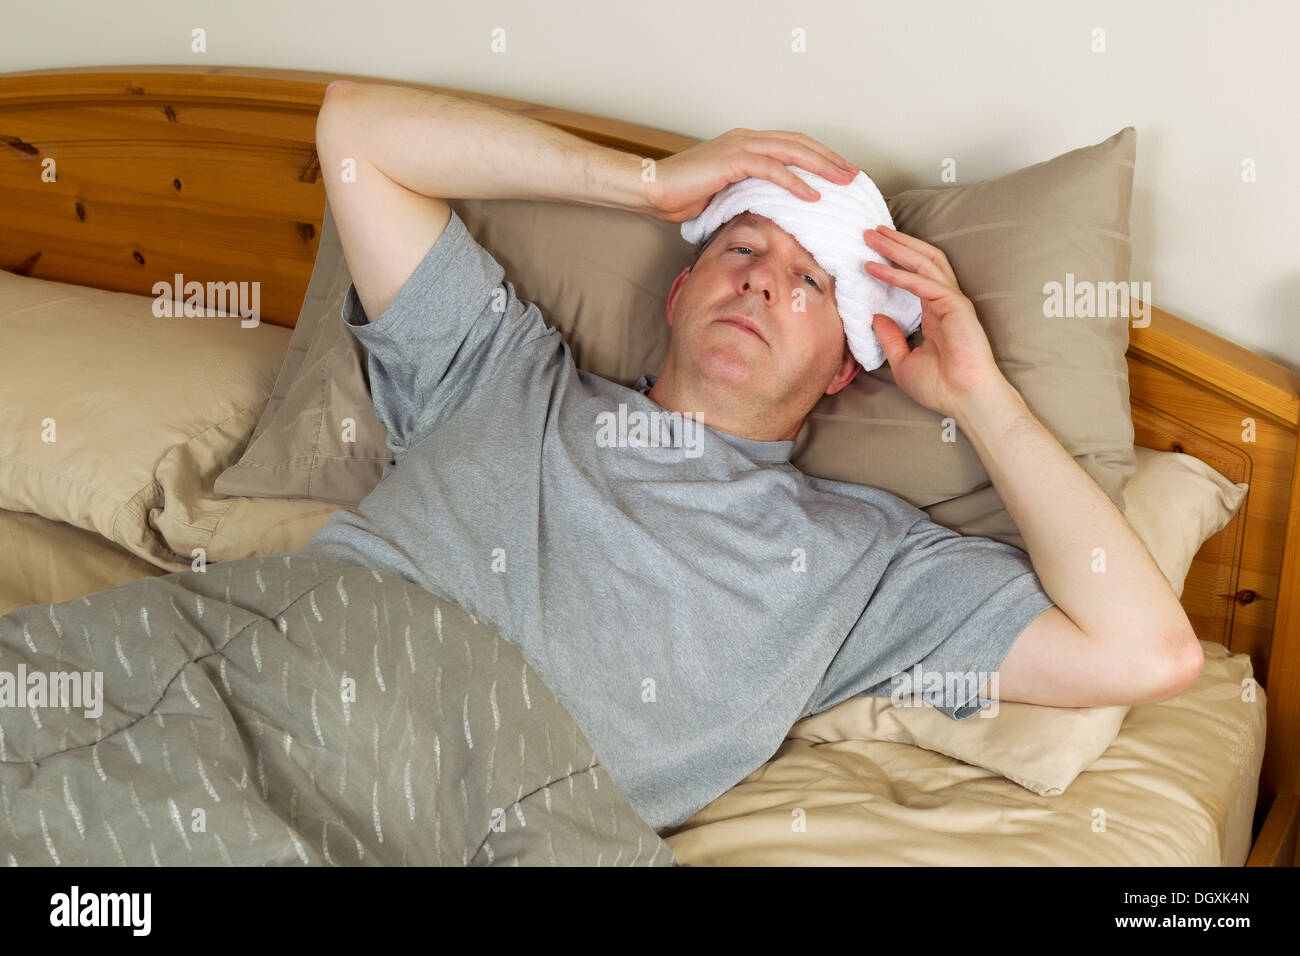 Horizontale Foto des reifen Mannes, die Behandlung von Fieber durch  Waschlappen an die Stirn halten, beim liegen im Bett Stockfotografie - Alamy